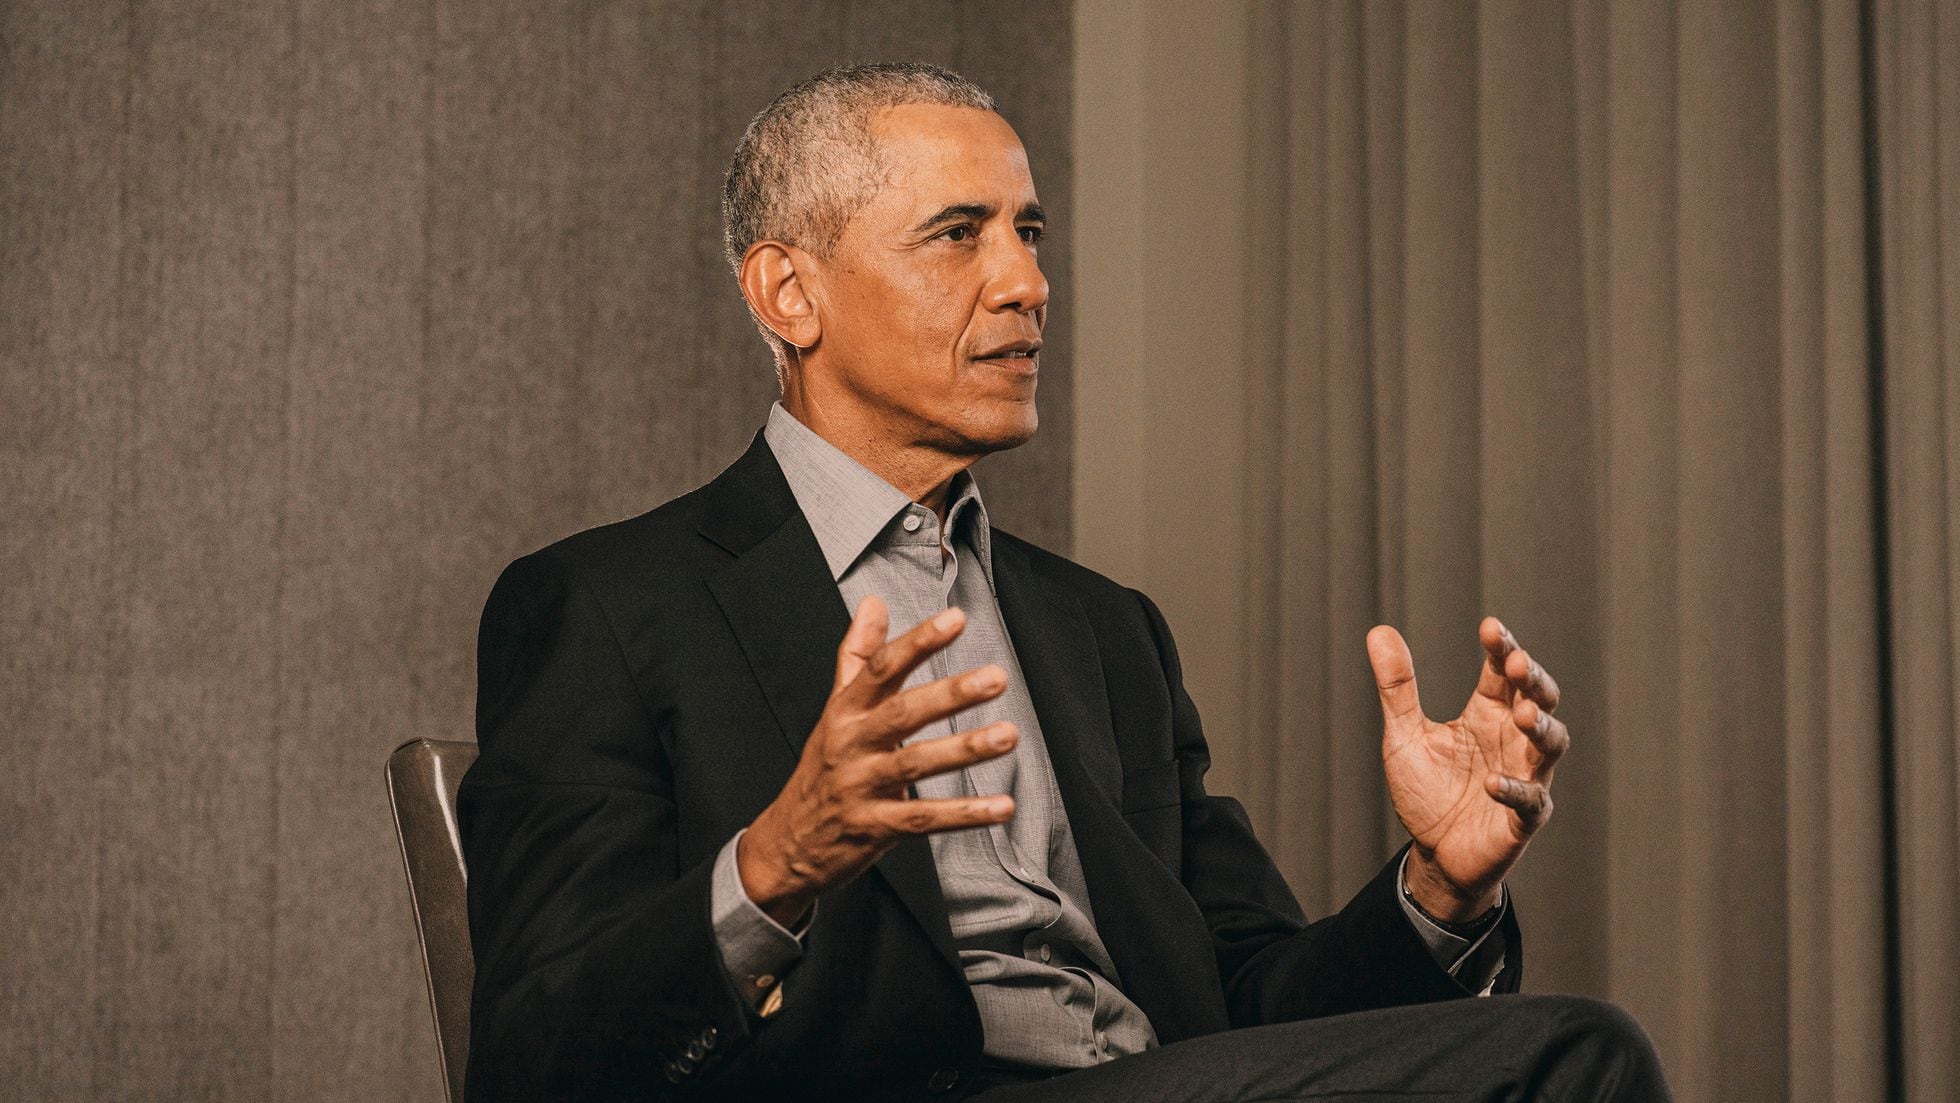 La entrevista completa a Barack Obama en vdeo | Vdeos | EL PAS